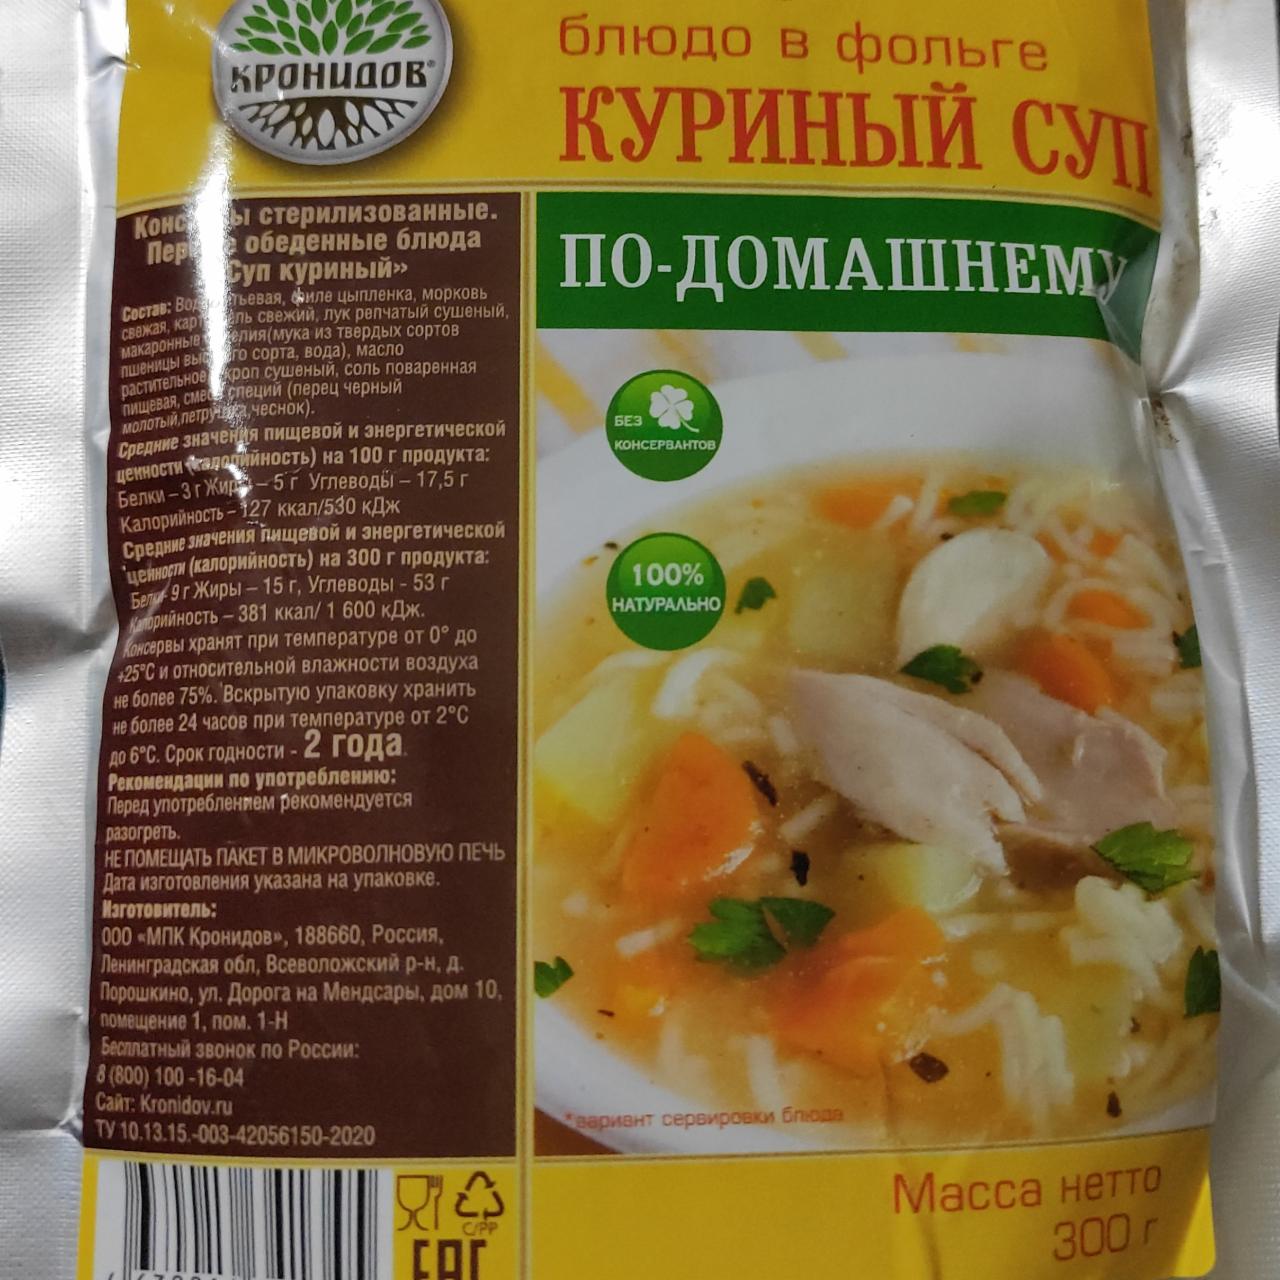 Фото - Готовое блюдо в фольге куриный суп по-домашнему Кронидов